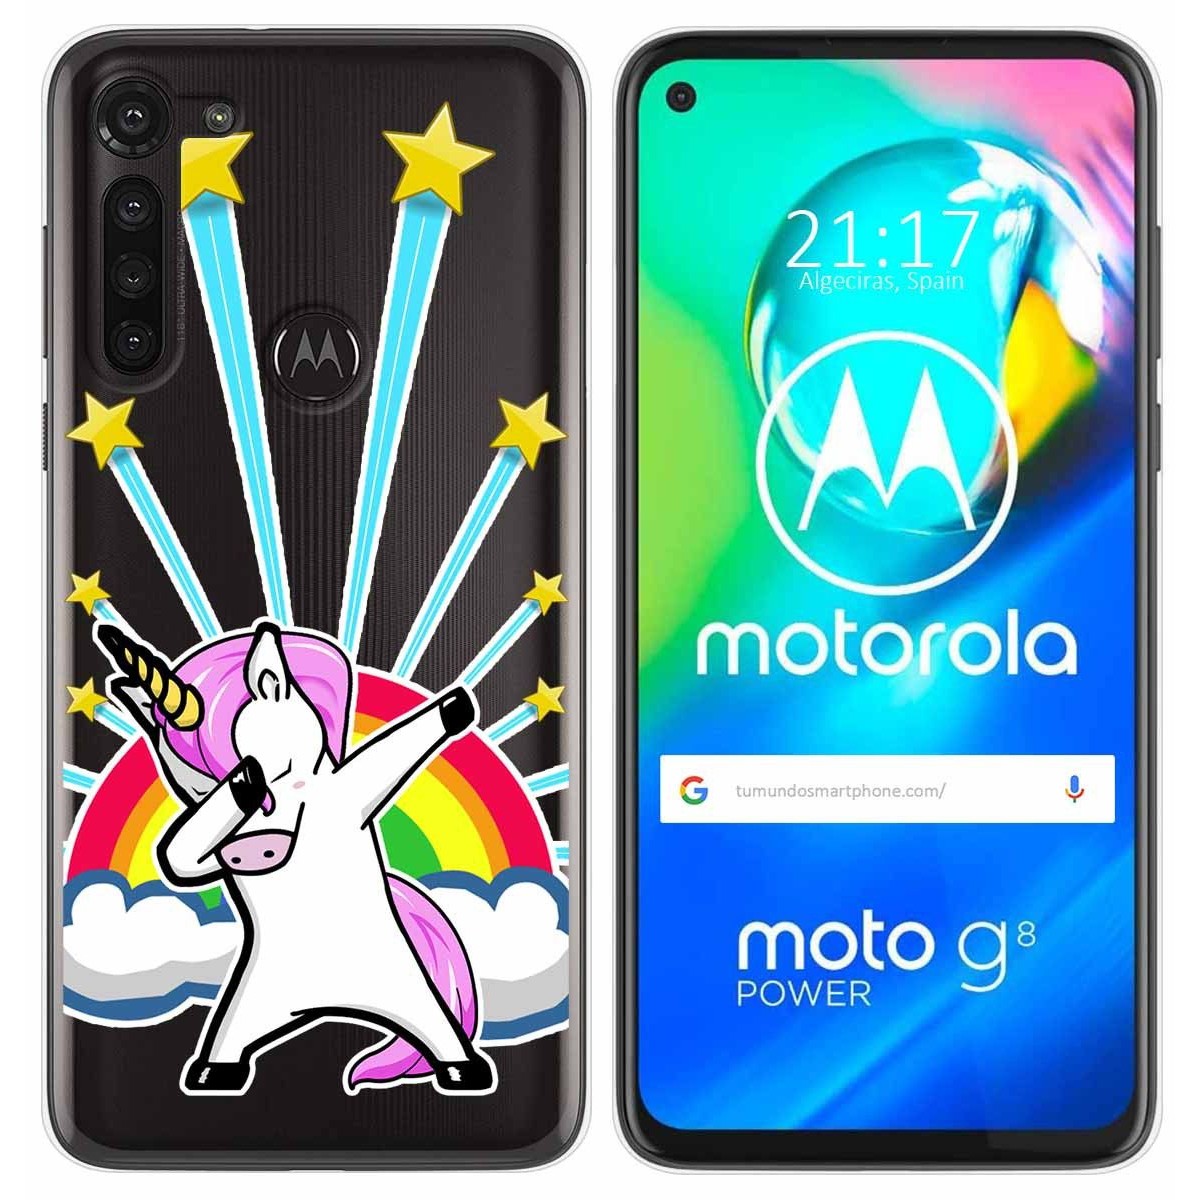 Funda Gel Transparente para Motorola Moto G8 Power diseño Unicornio Dibujos